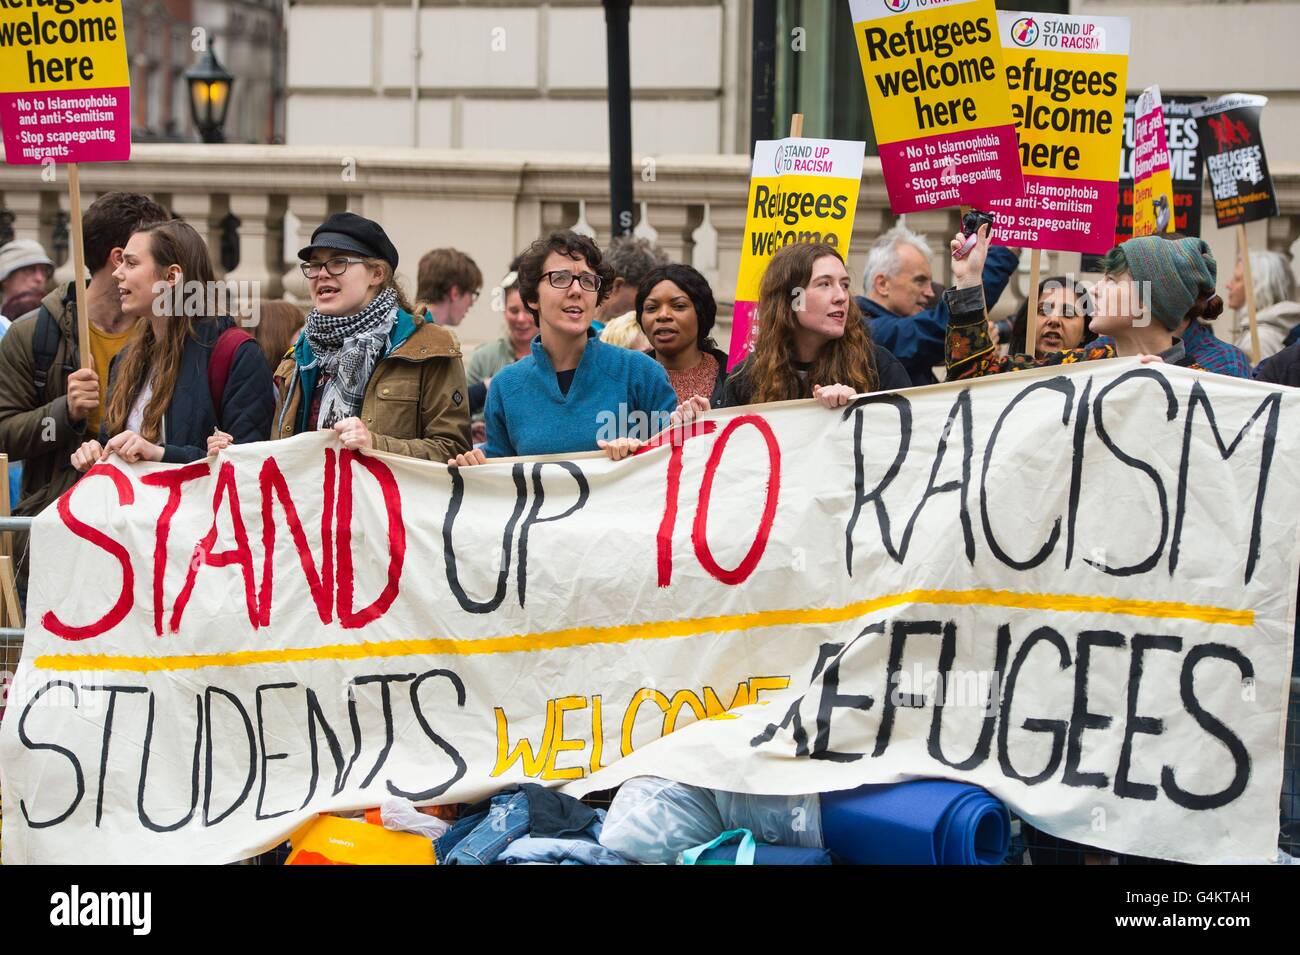 Demonstranten halten, dass "Flüchtlinge hier begrüßen zu dürfen" in der Nähe der französischen Botschaft in Knightsbridge, London, Banner demonstrieren gegen die Entscheidung von französischen Behörden die Einreise auf einen Hilfskonvoi mit Lieferungen für Flüchtlinge und Migranten in der Dschungel-Camp in Calais zu verweigern. Stockfoto